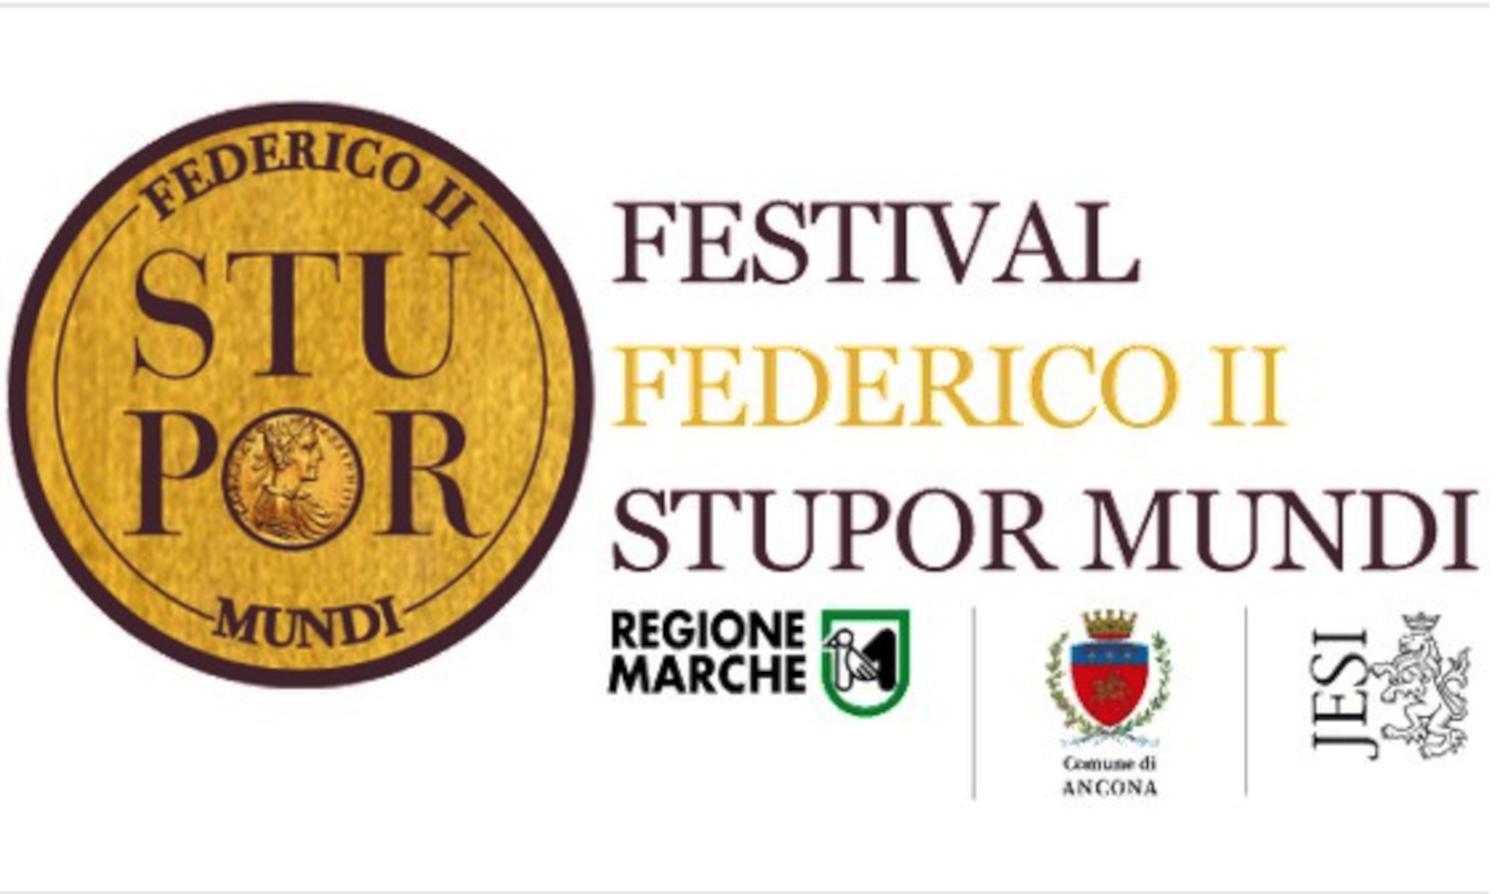 Festival Federico II Stupor Mundi, a Jesi dal 9 all'11 maggio